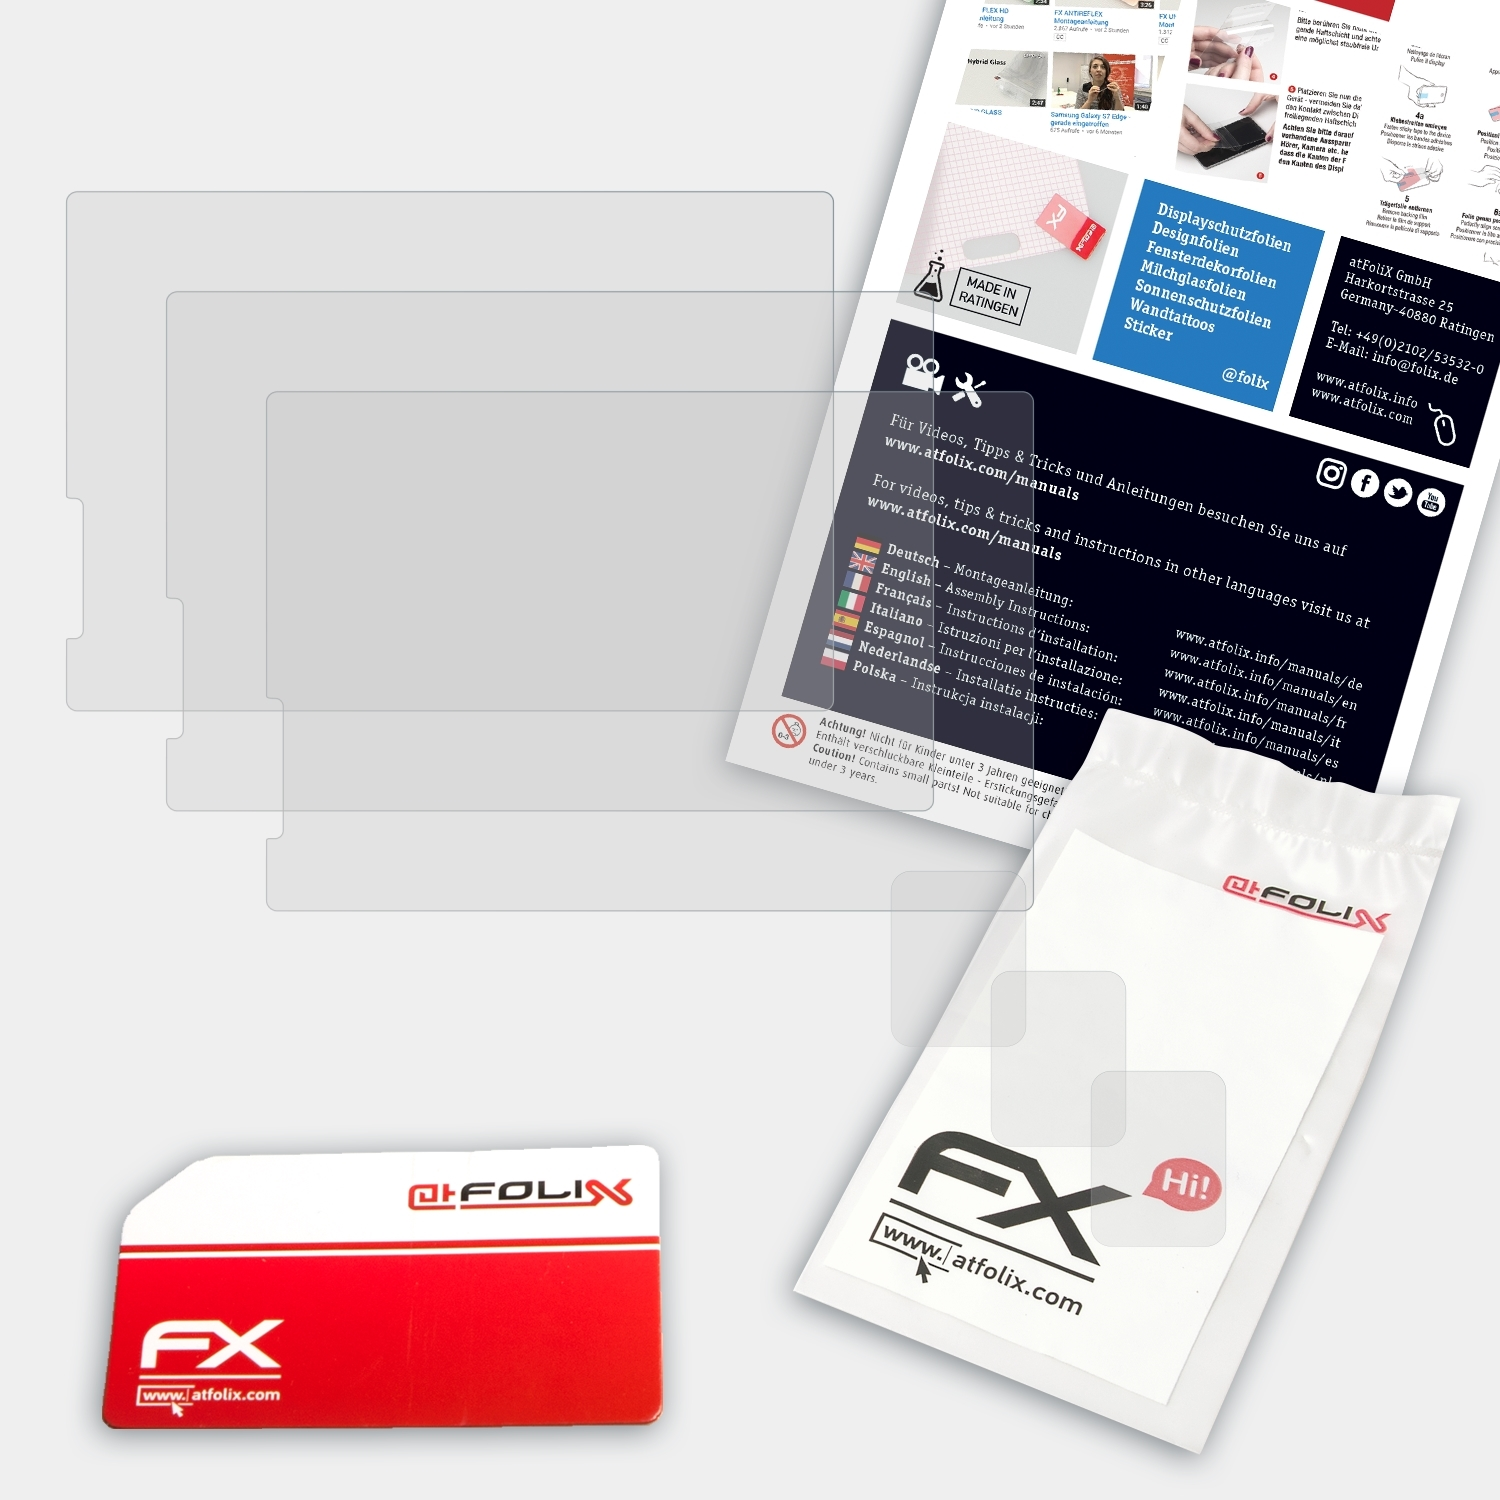 ATFOLIX 3x FX-Antireflex Displayschutz(für Campark ACT76-UK)